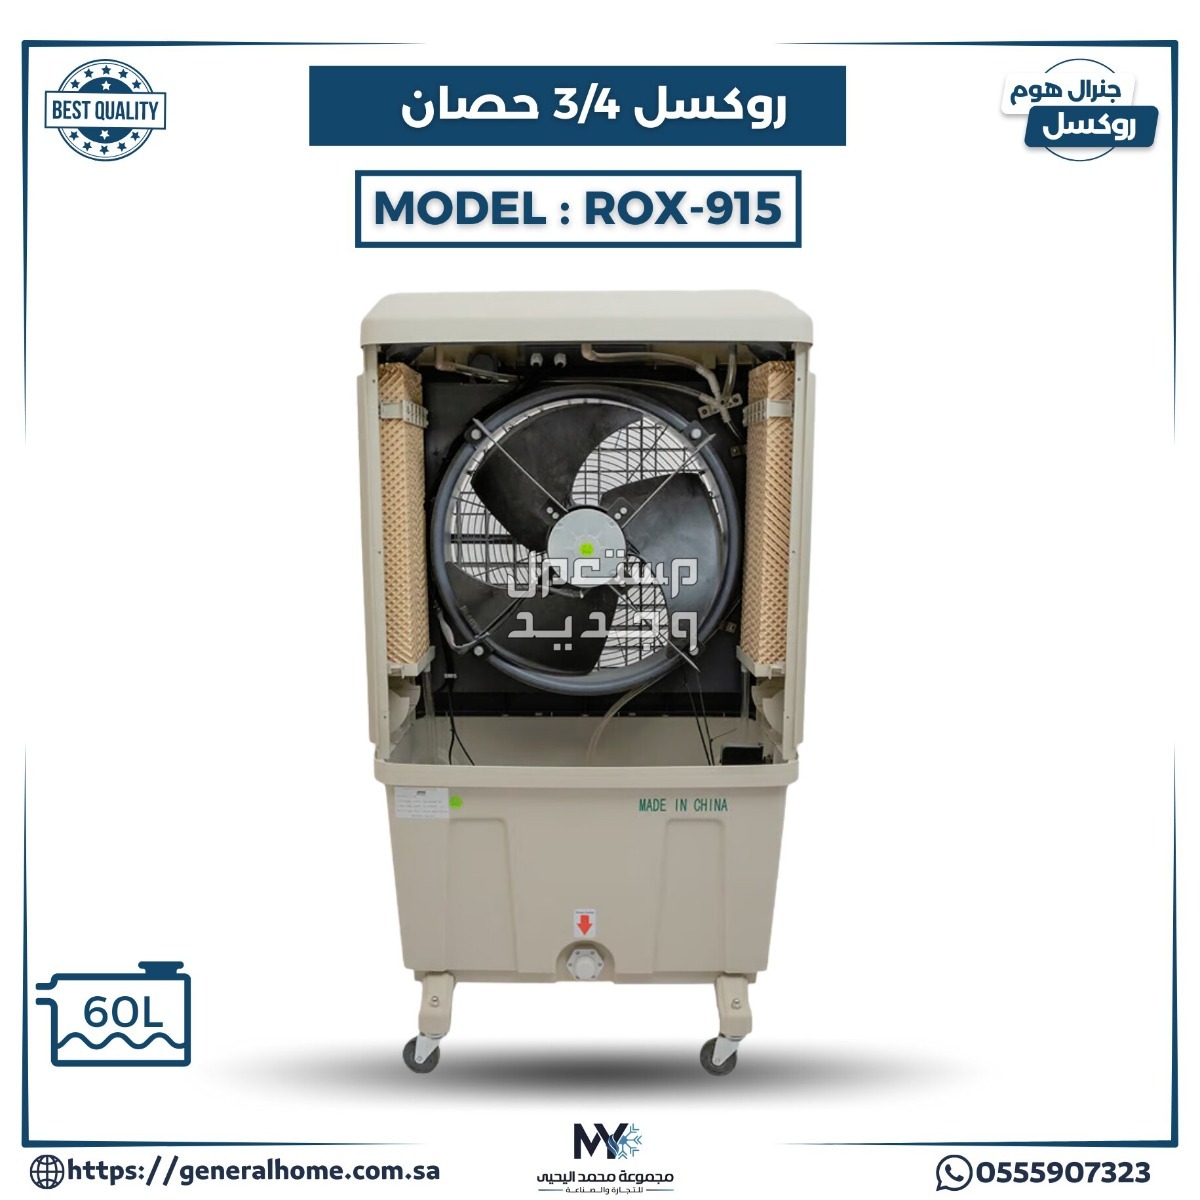 عروض اليحيى للمكيفات بالأنواع والمواصفات والصور والأسعار في السودان مكيف روكسل 3/4 حصان موديل ROX-915